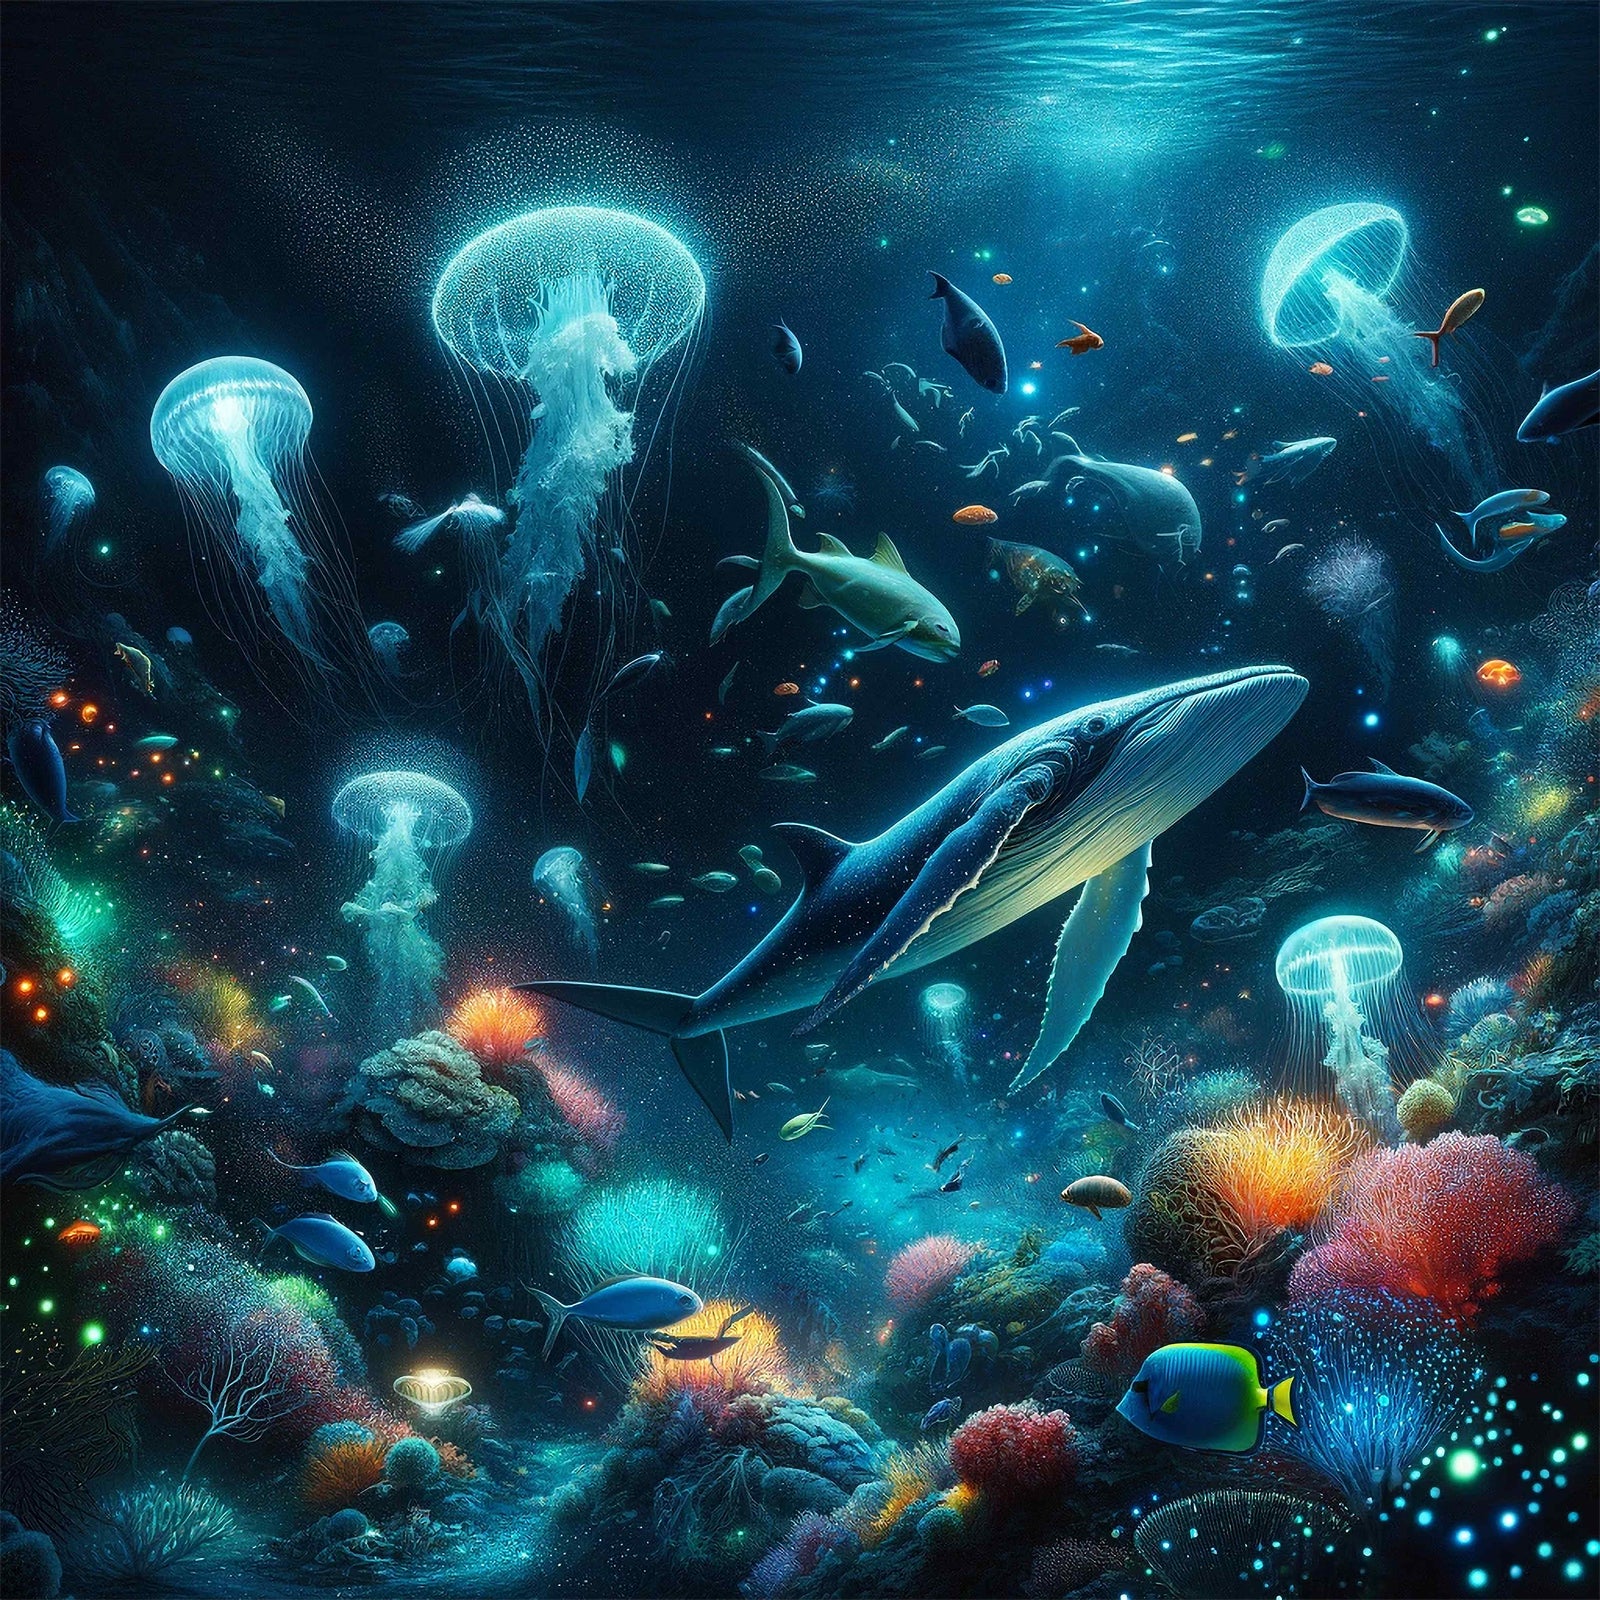 Underwater Worlds